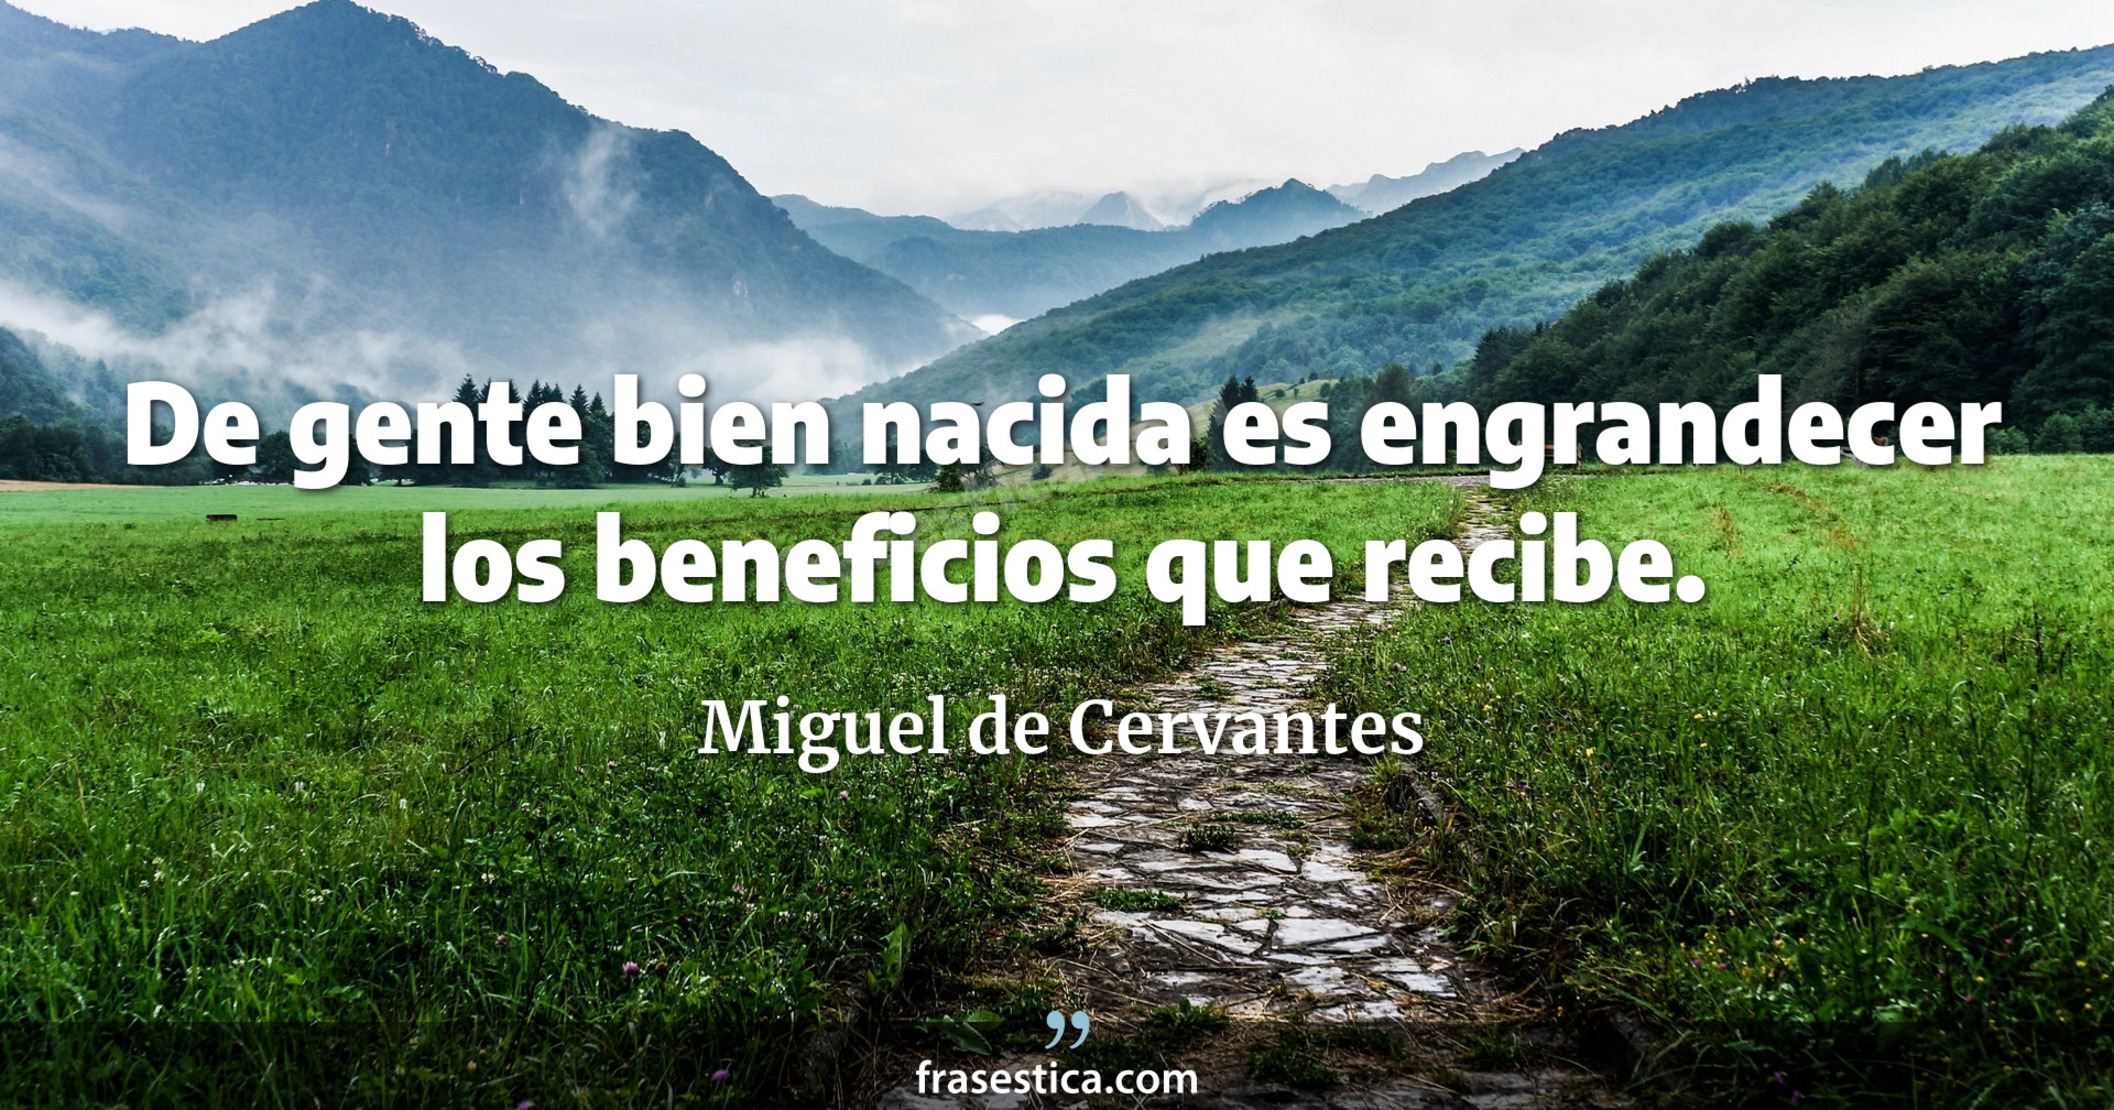 De gente bien nacida es engrandecer los beneficios que recibe. - Miguel de Cervantes